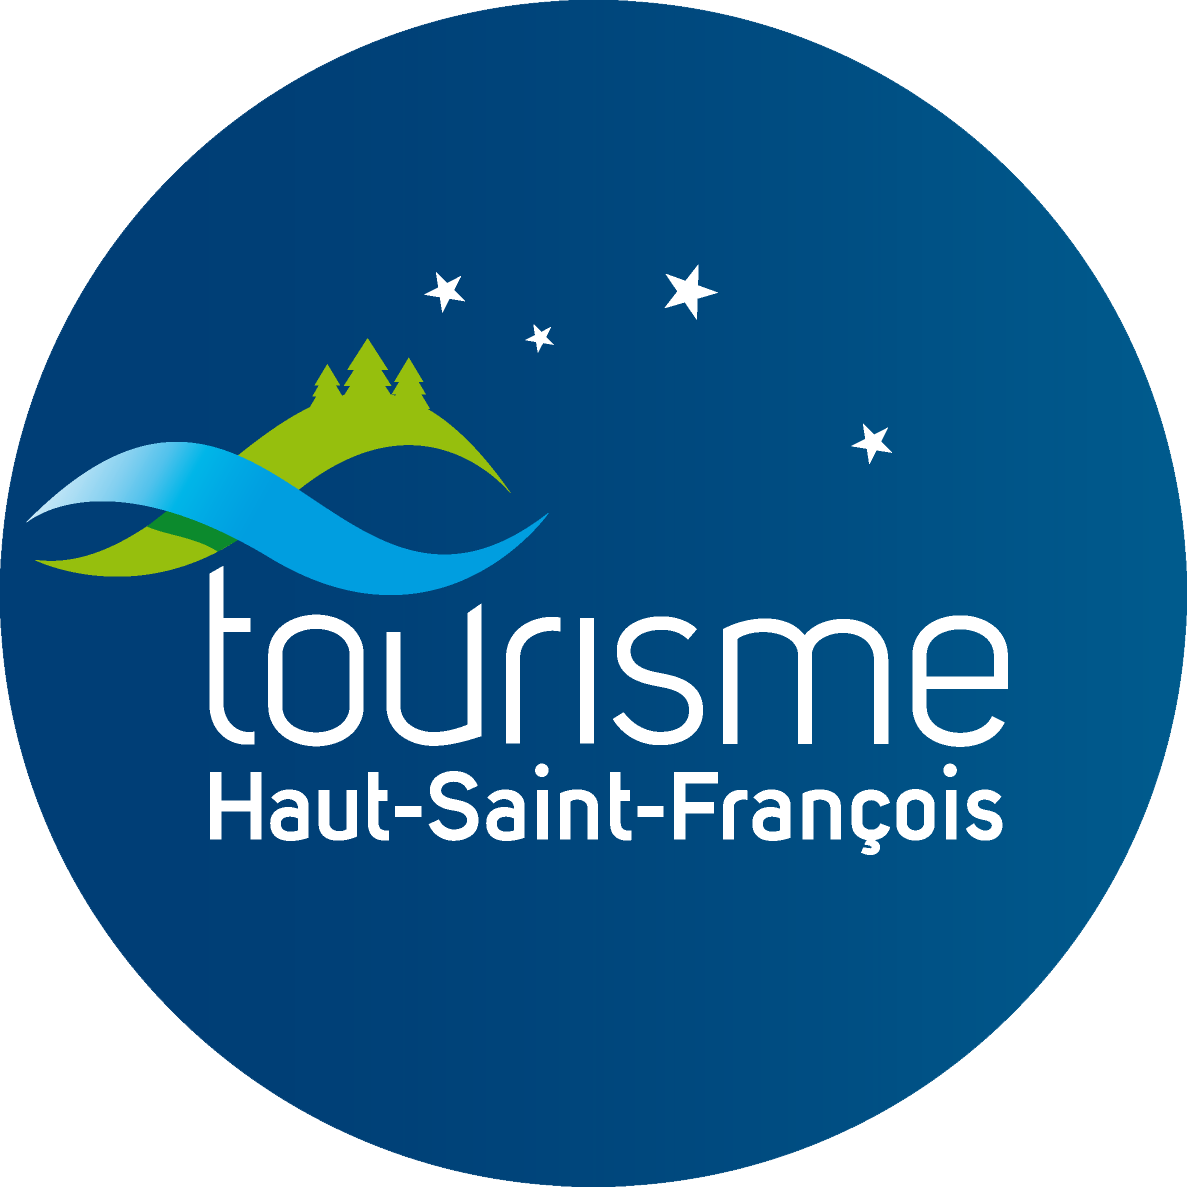 Tourisme Haut-Saint-François - Partenaire du Centre local de développement (CLD) du Haut-Saint-François